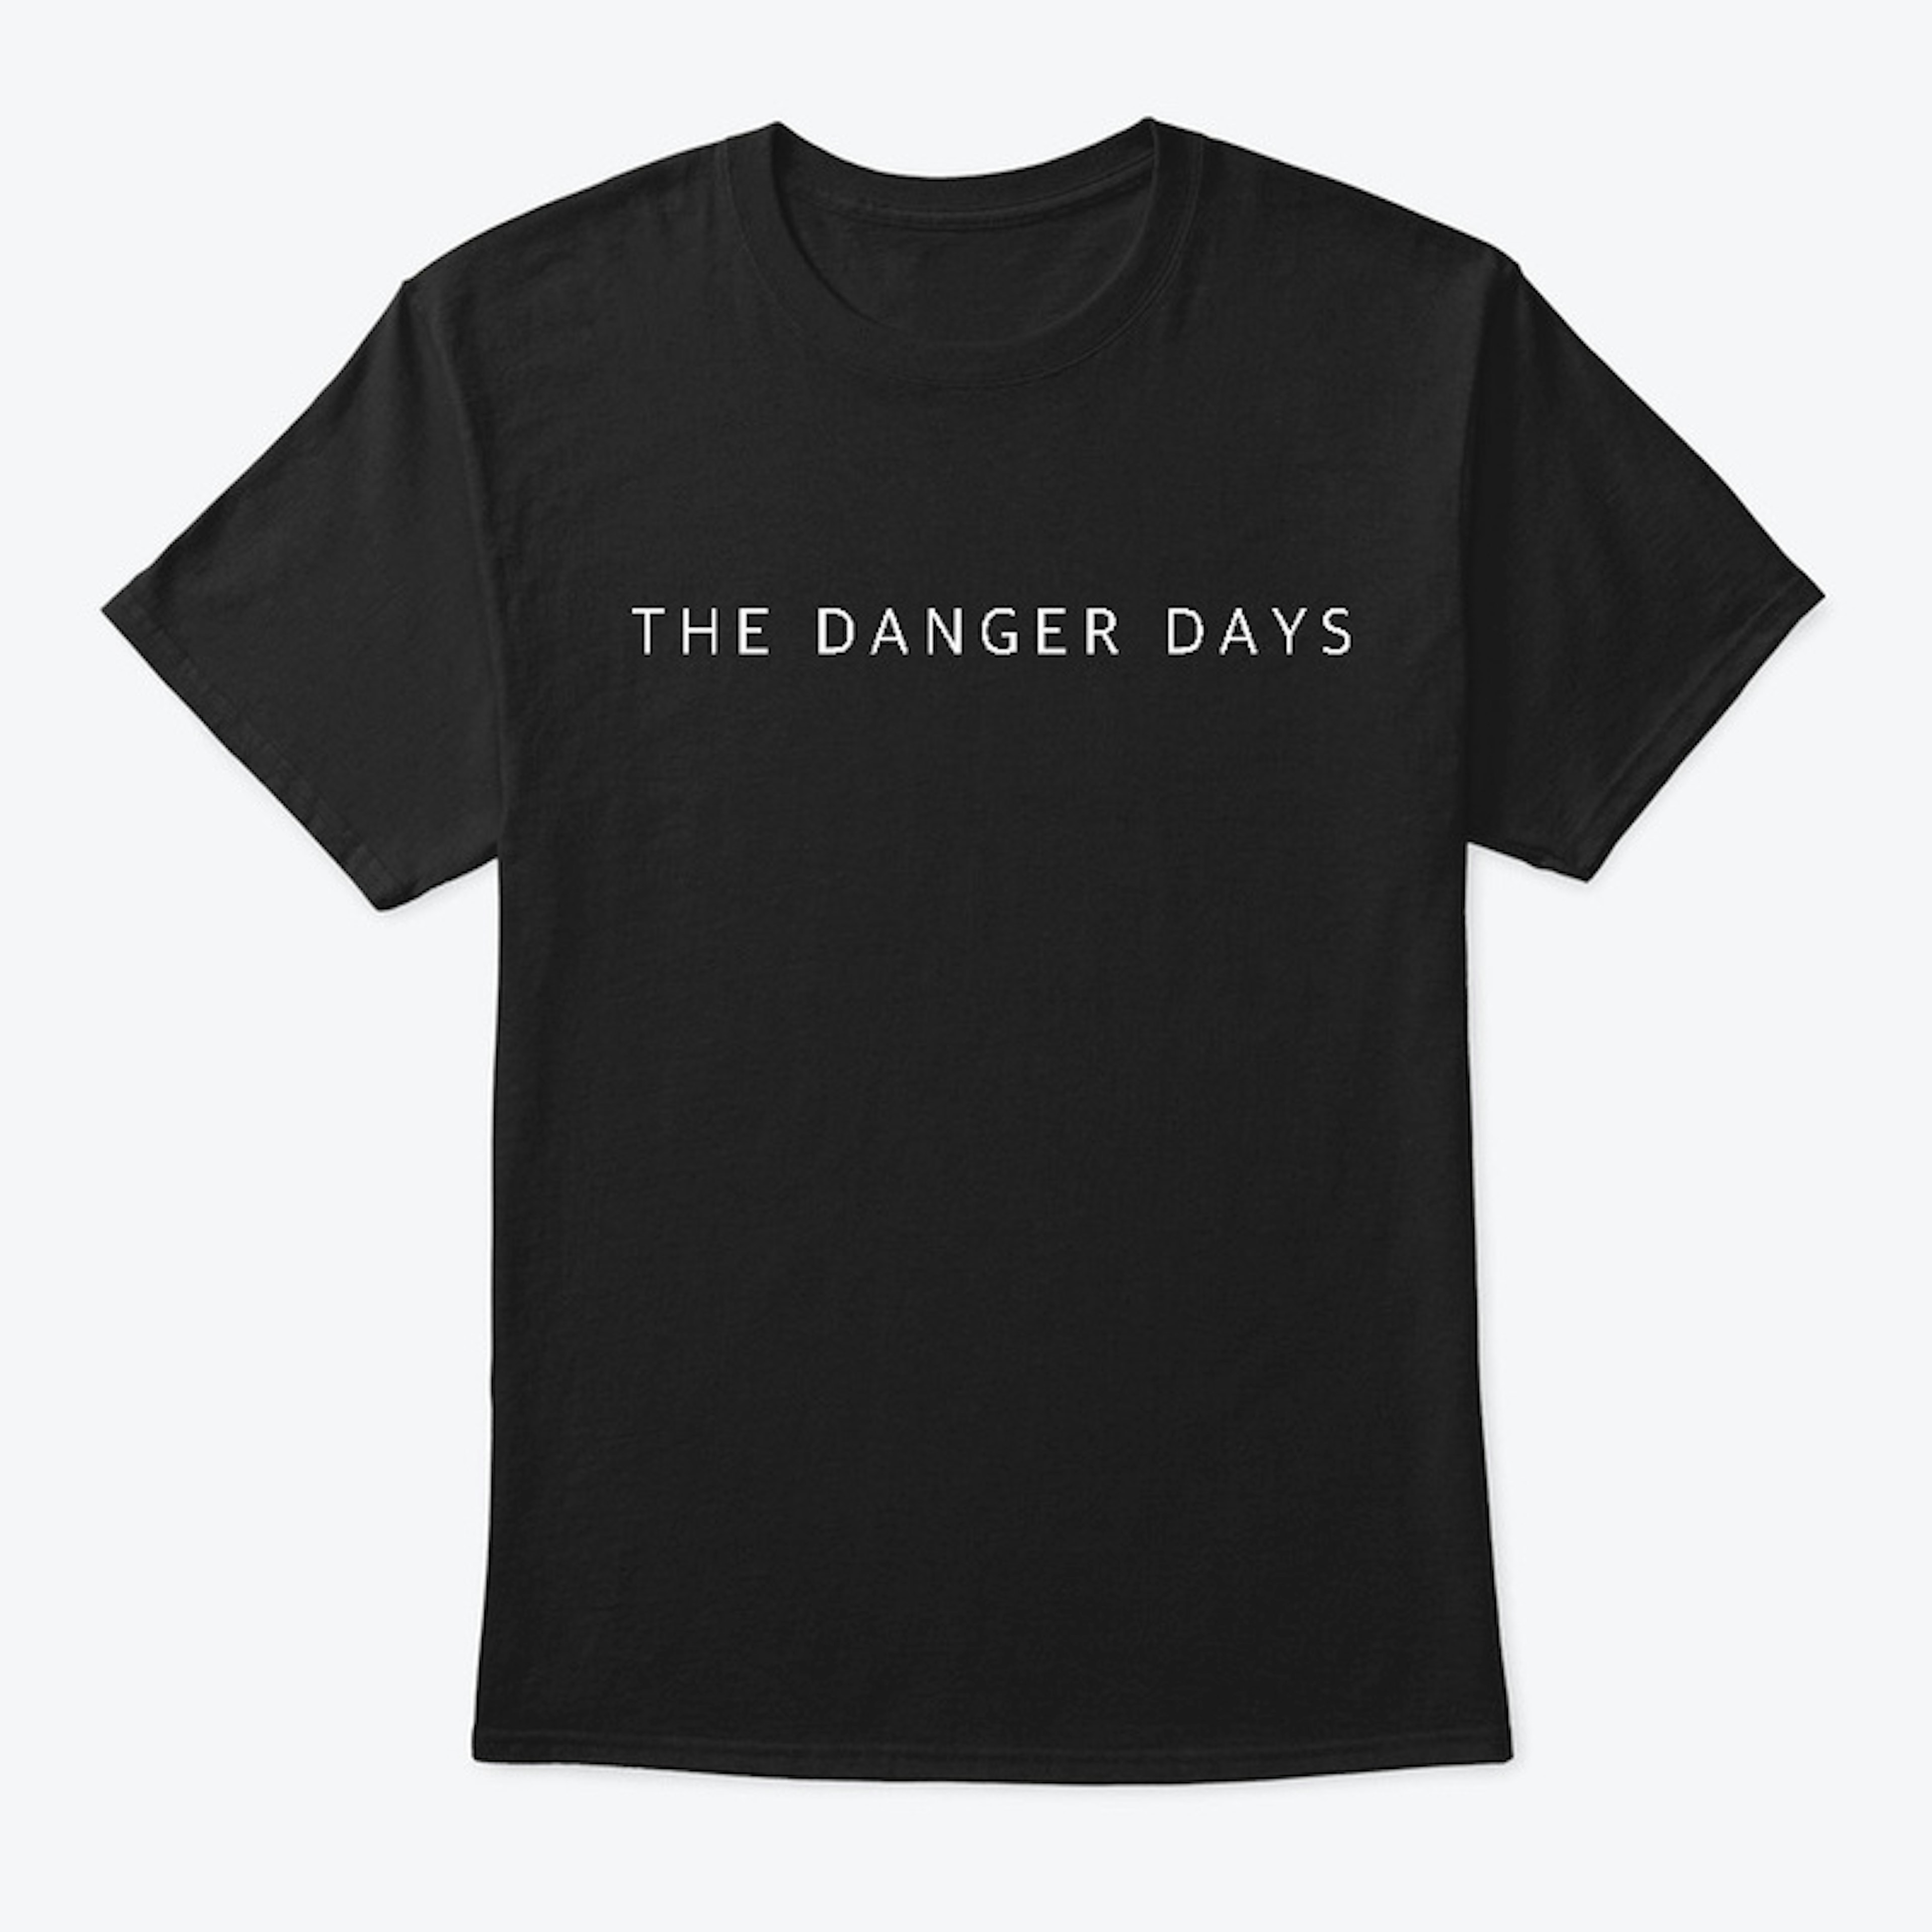 The Danger Days - Plain